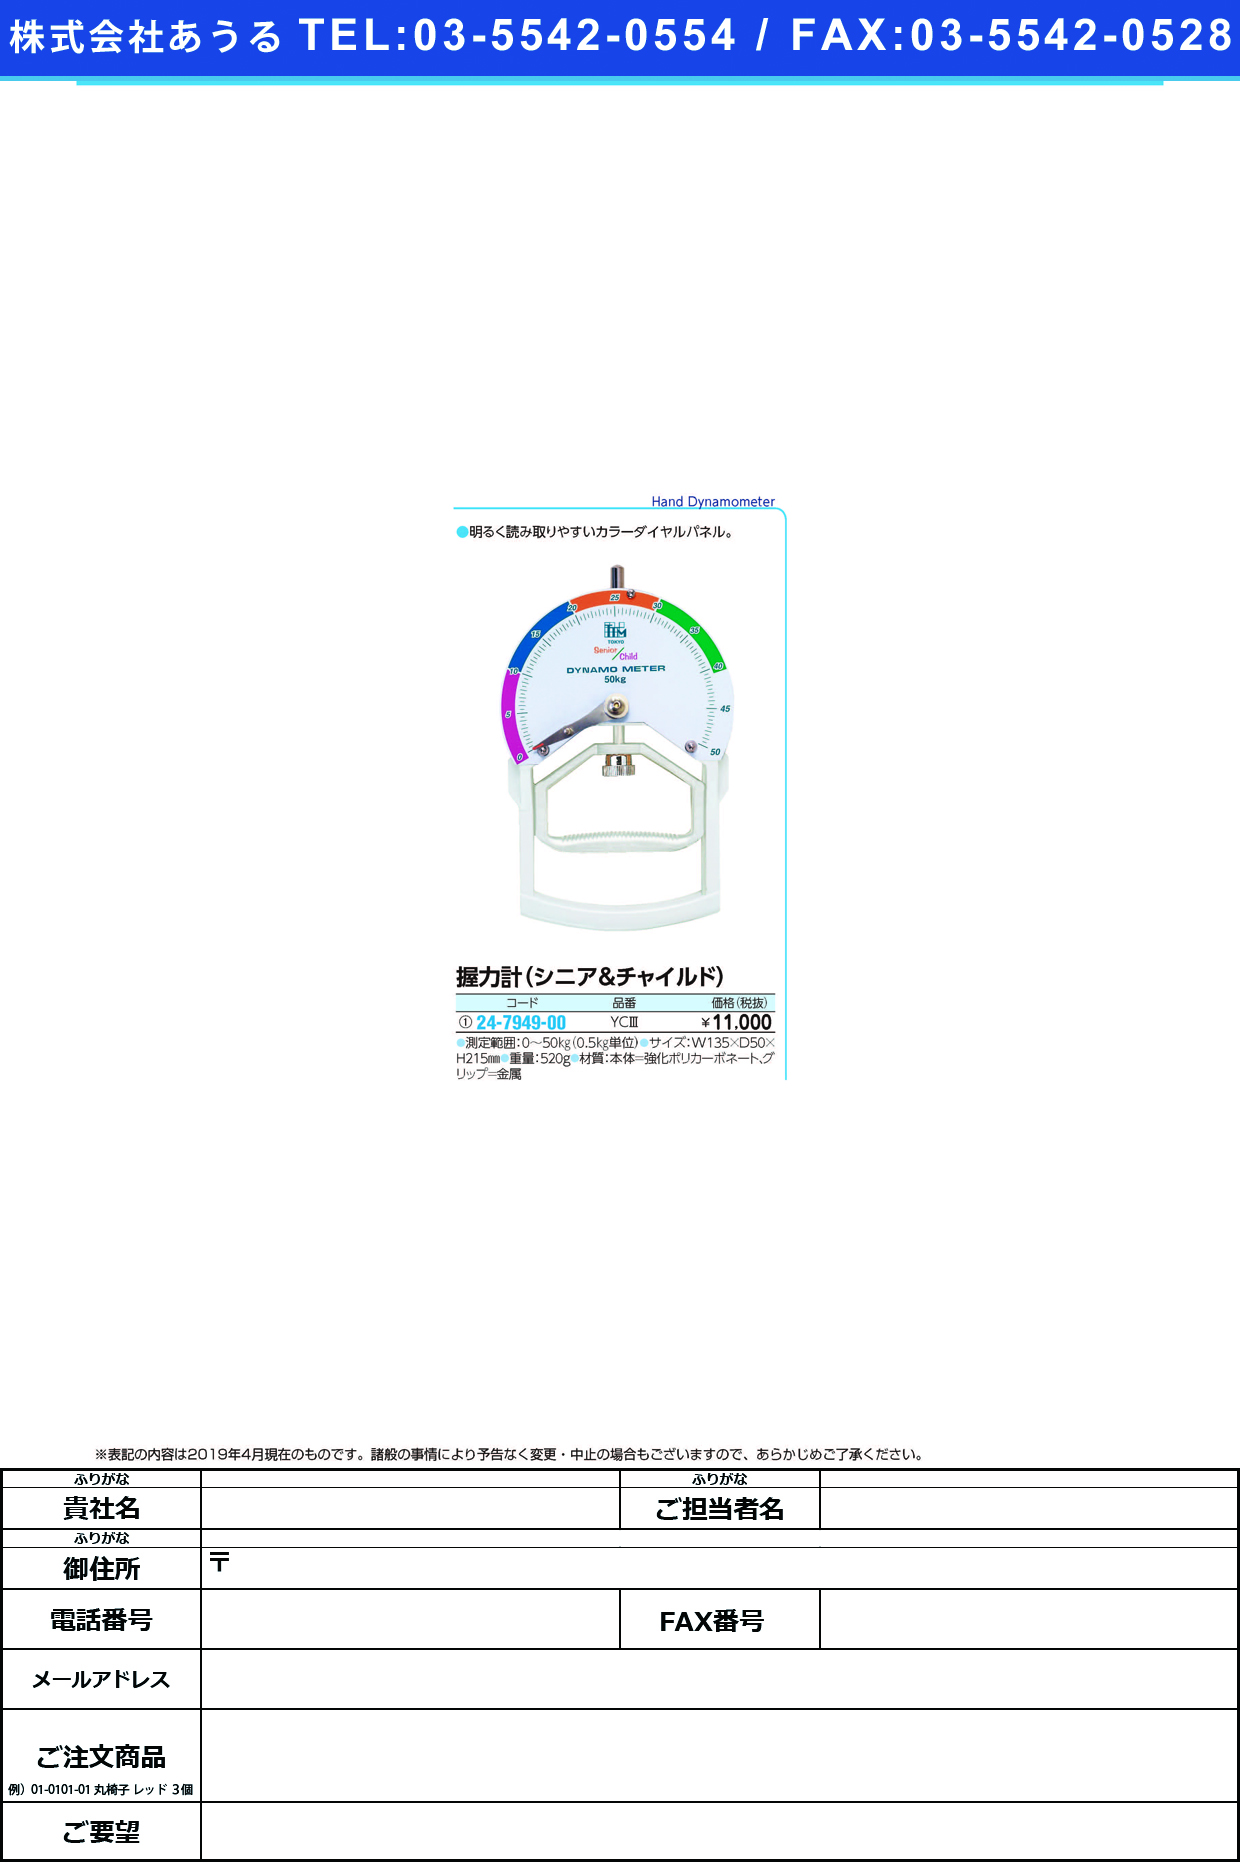 (24-7949-00)握力計（シニア＆チャイルド）YC3 ｱｸﾘｮｸｹｲ(ｼﾆｱ&ﾁｬｲﾙﾄﾞ)(ツツミ)【1台単位】【2019年カタログ商品】